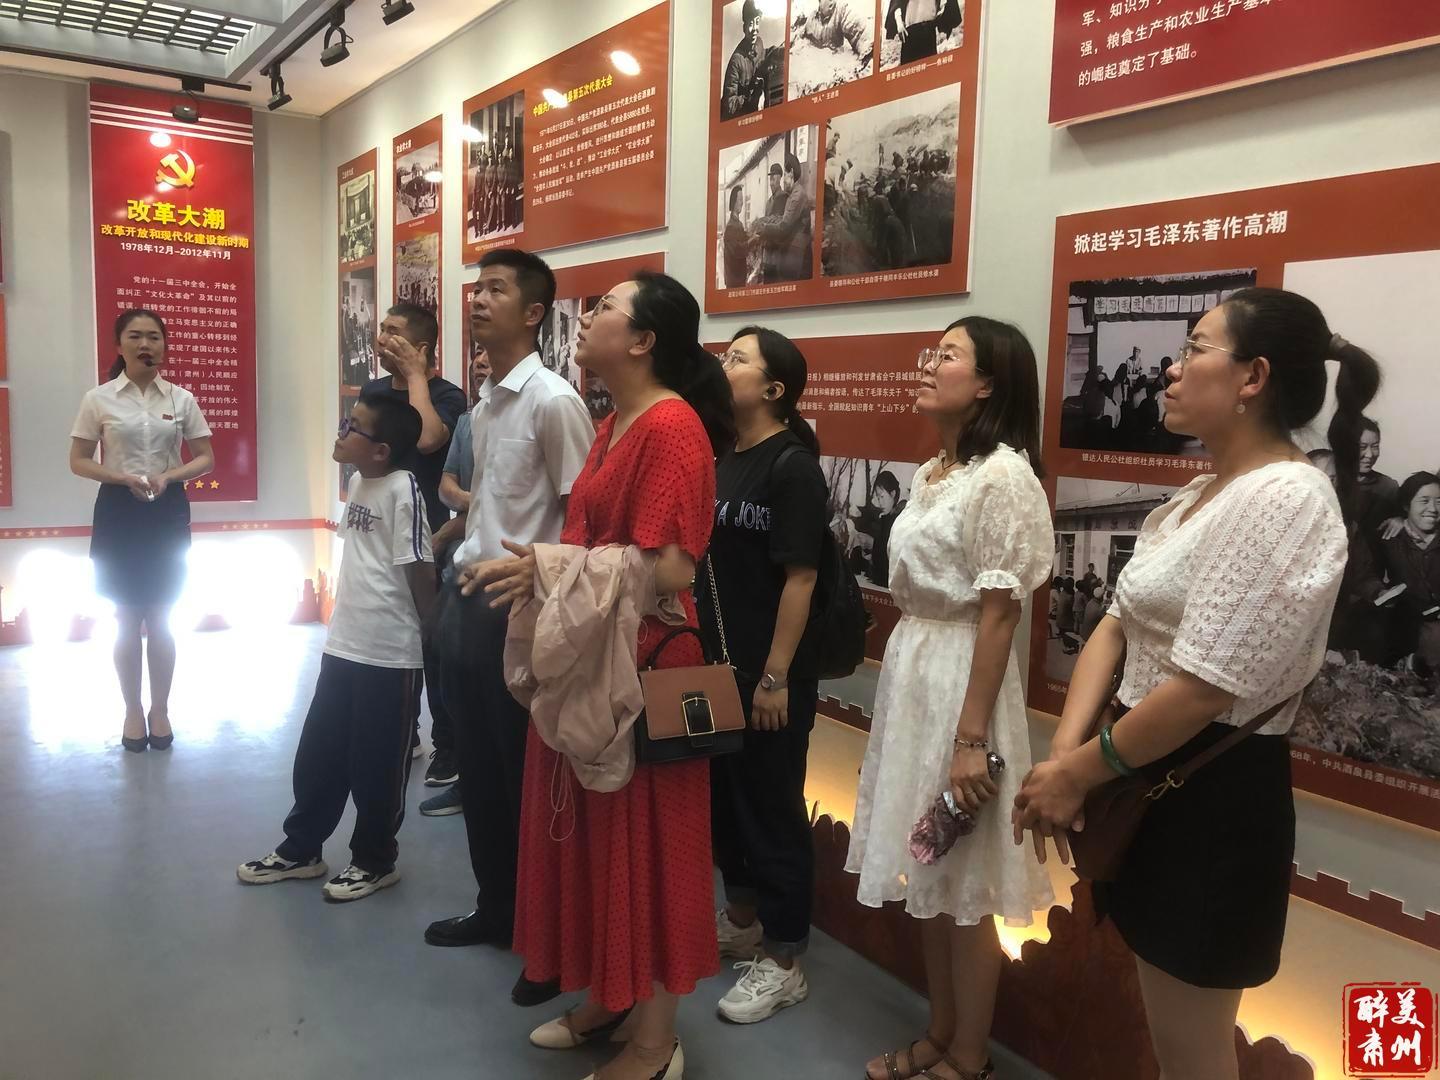 忆峥嵘岁月!肃州区党员干部参观庆祝建党百年主题展览